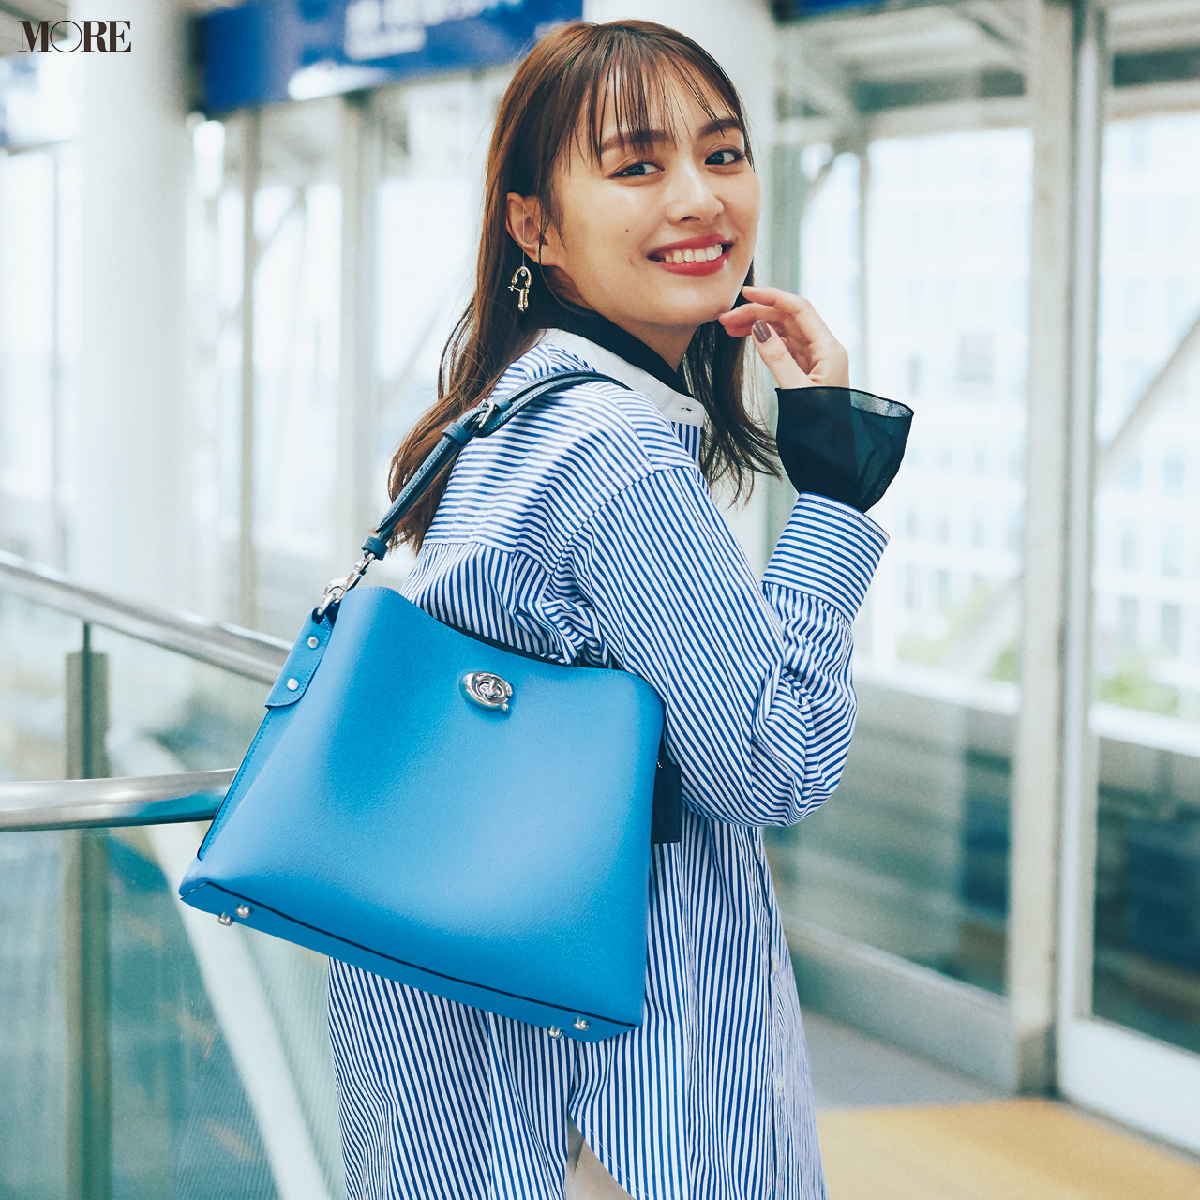 ブルーの通勤バッグ5選。清潔感と好印象をゲットできる万能カラー